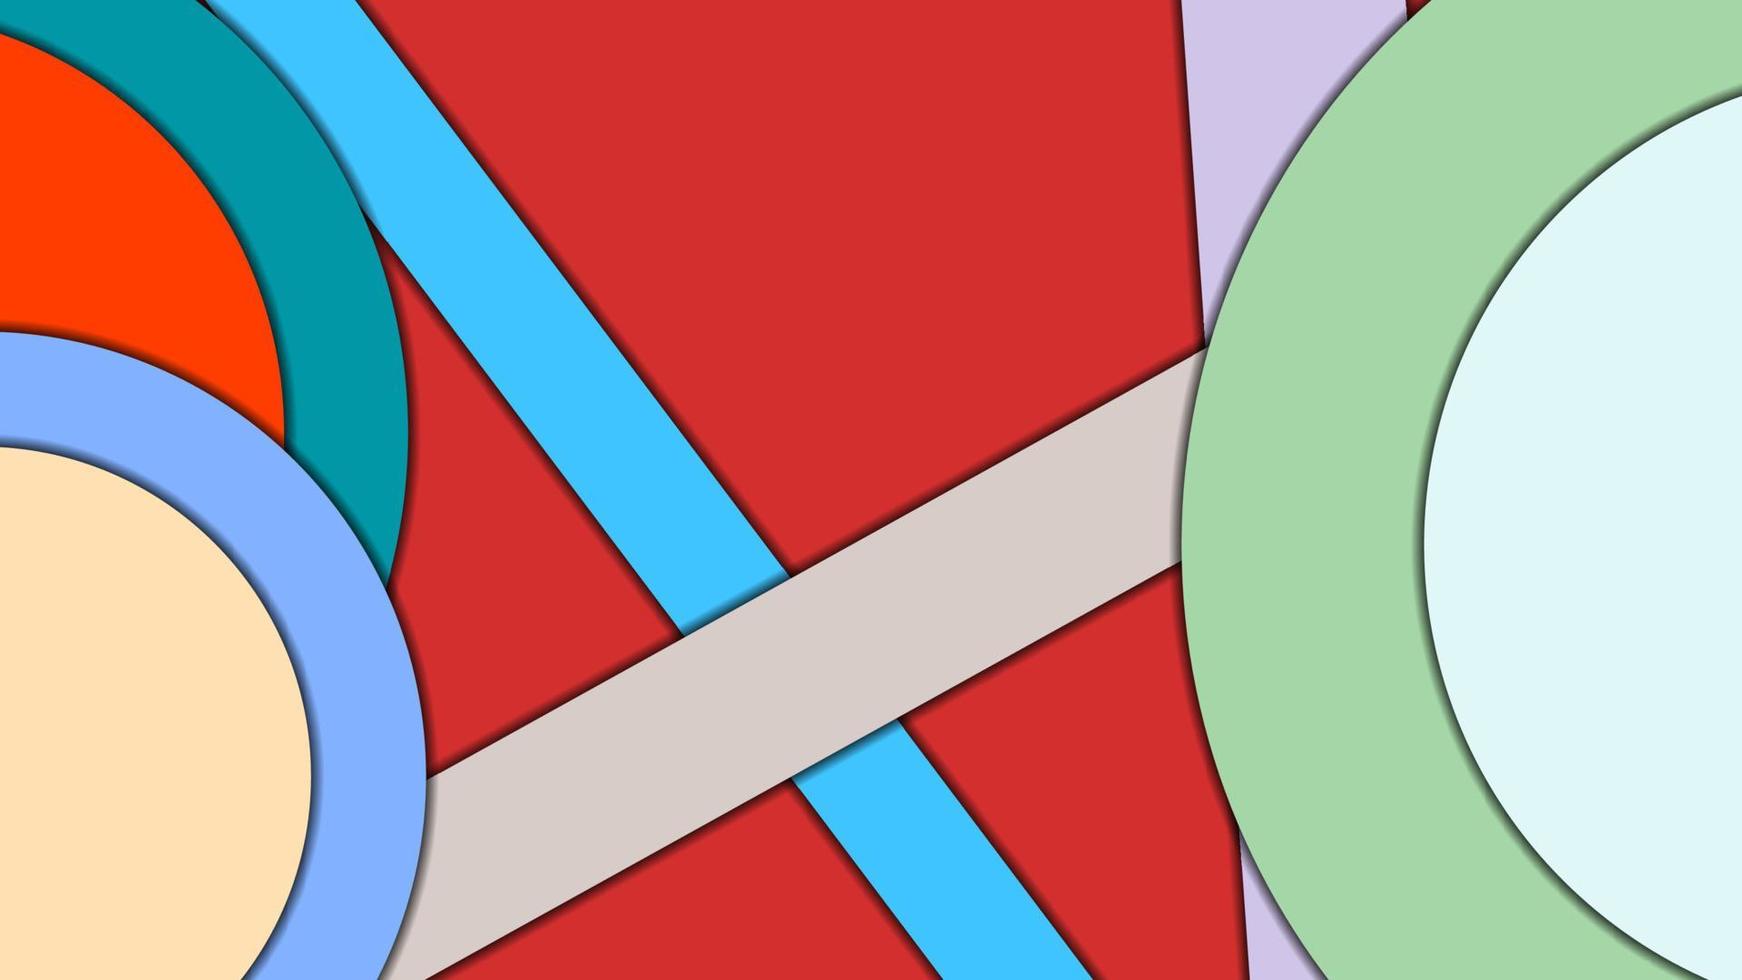 abstrakt geometrisk färgglad vektorbakgrund i materialdesignstil med koncentriska cirklar och roterade rektanglar med skuggor, som imiterar klippt papper. vektor